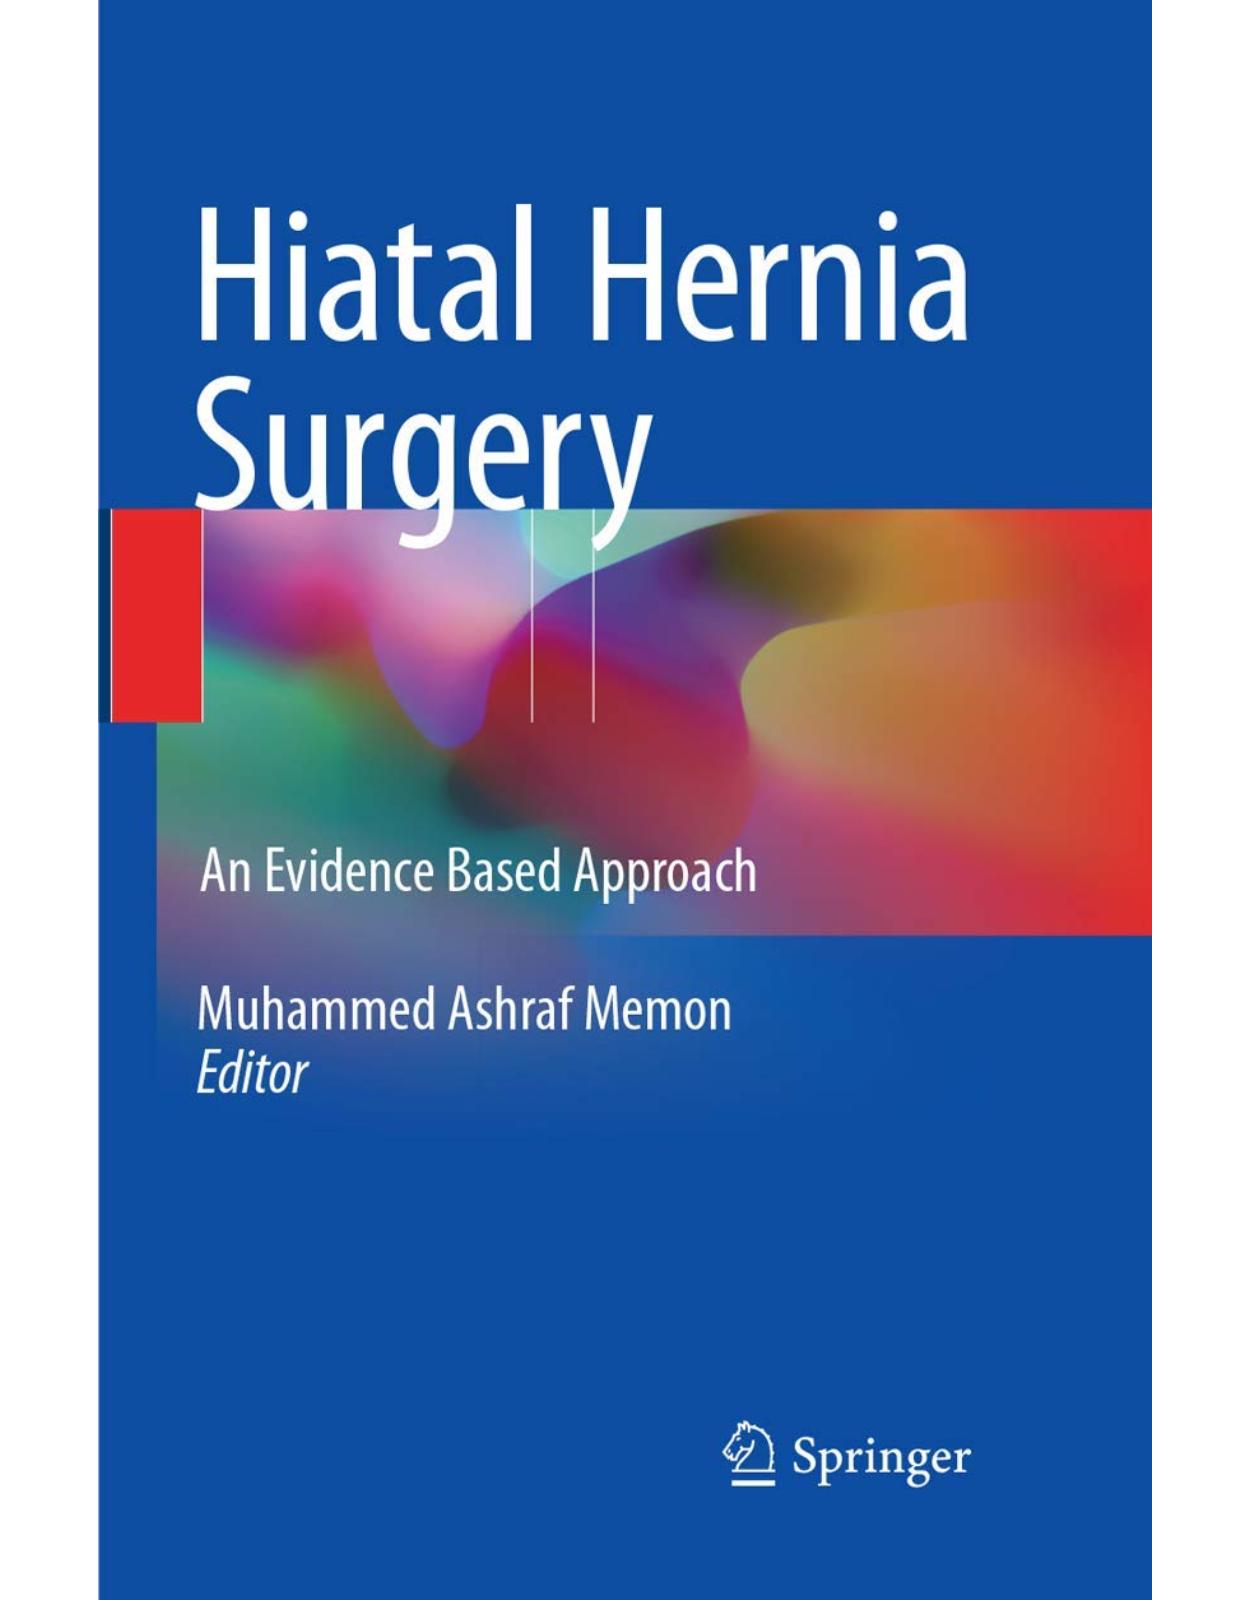 Hiatal Hernia Surgery: An Evidence Based Approach